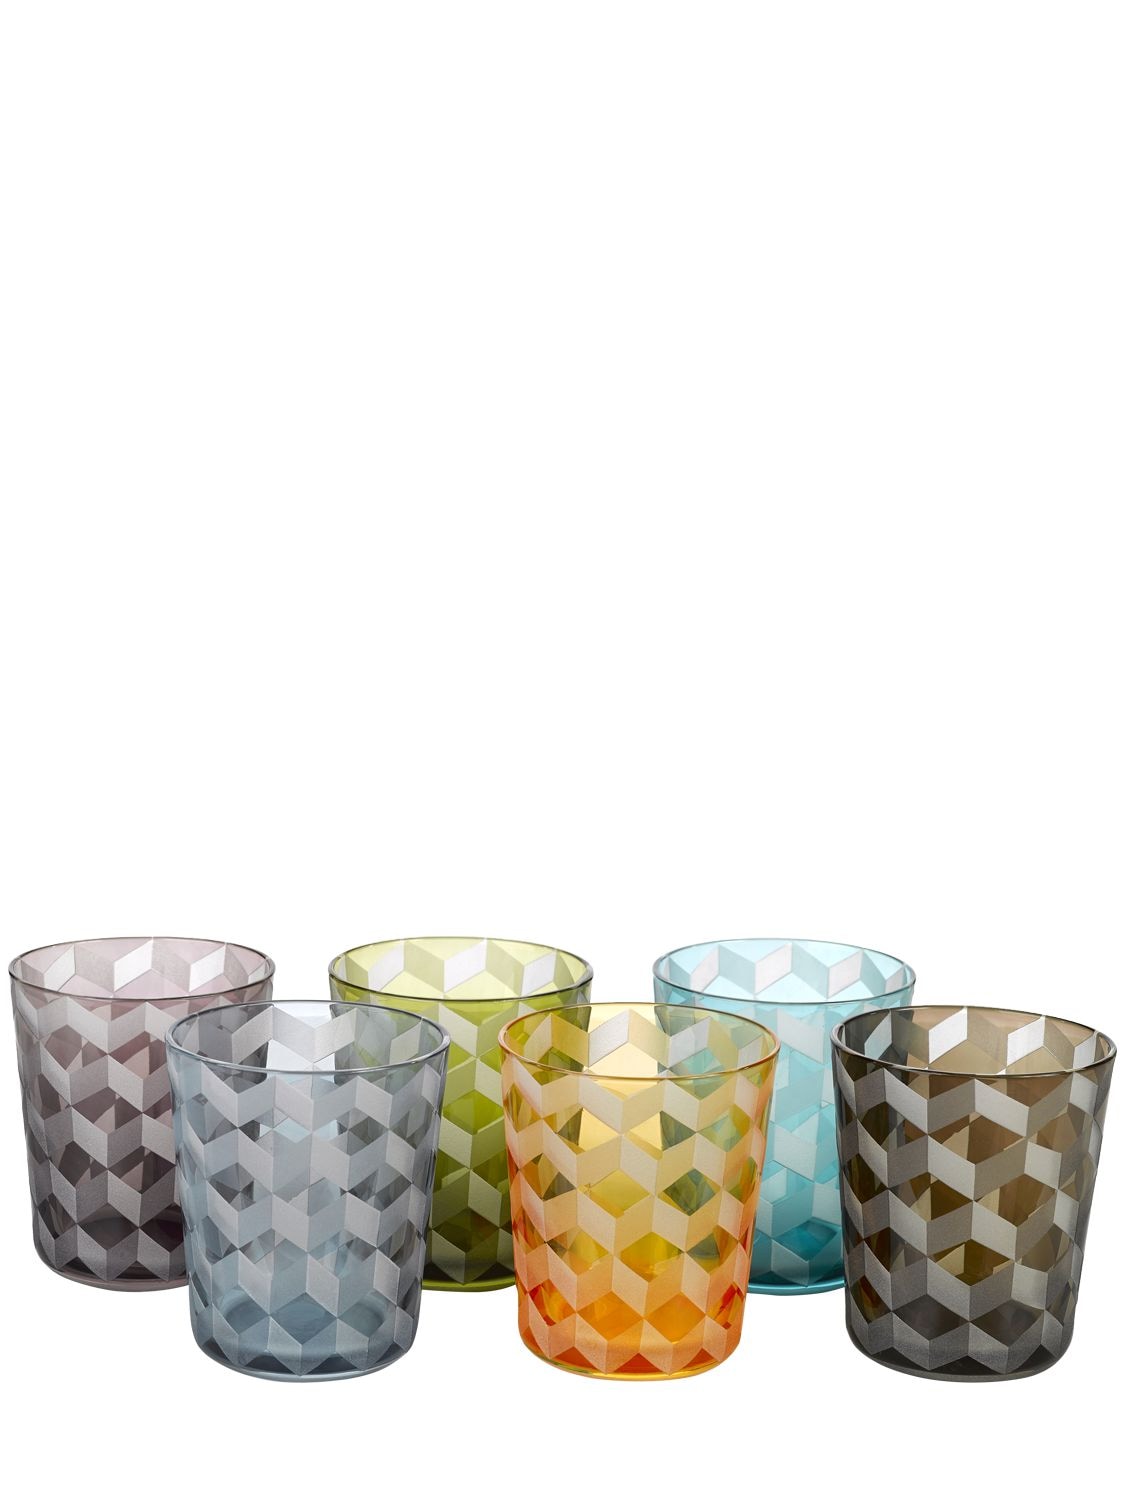 Polspotten Blocks Set Of 6 Multi-color Tumblers In Multicolor